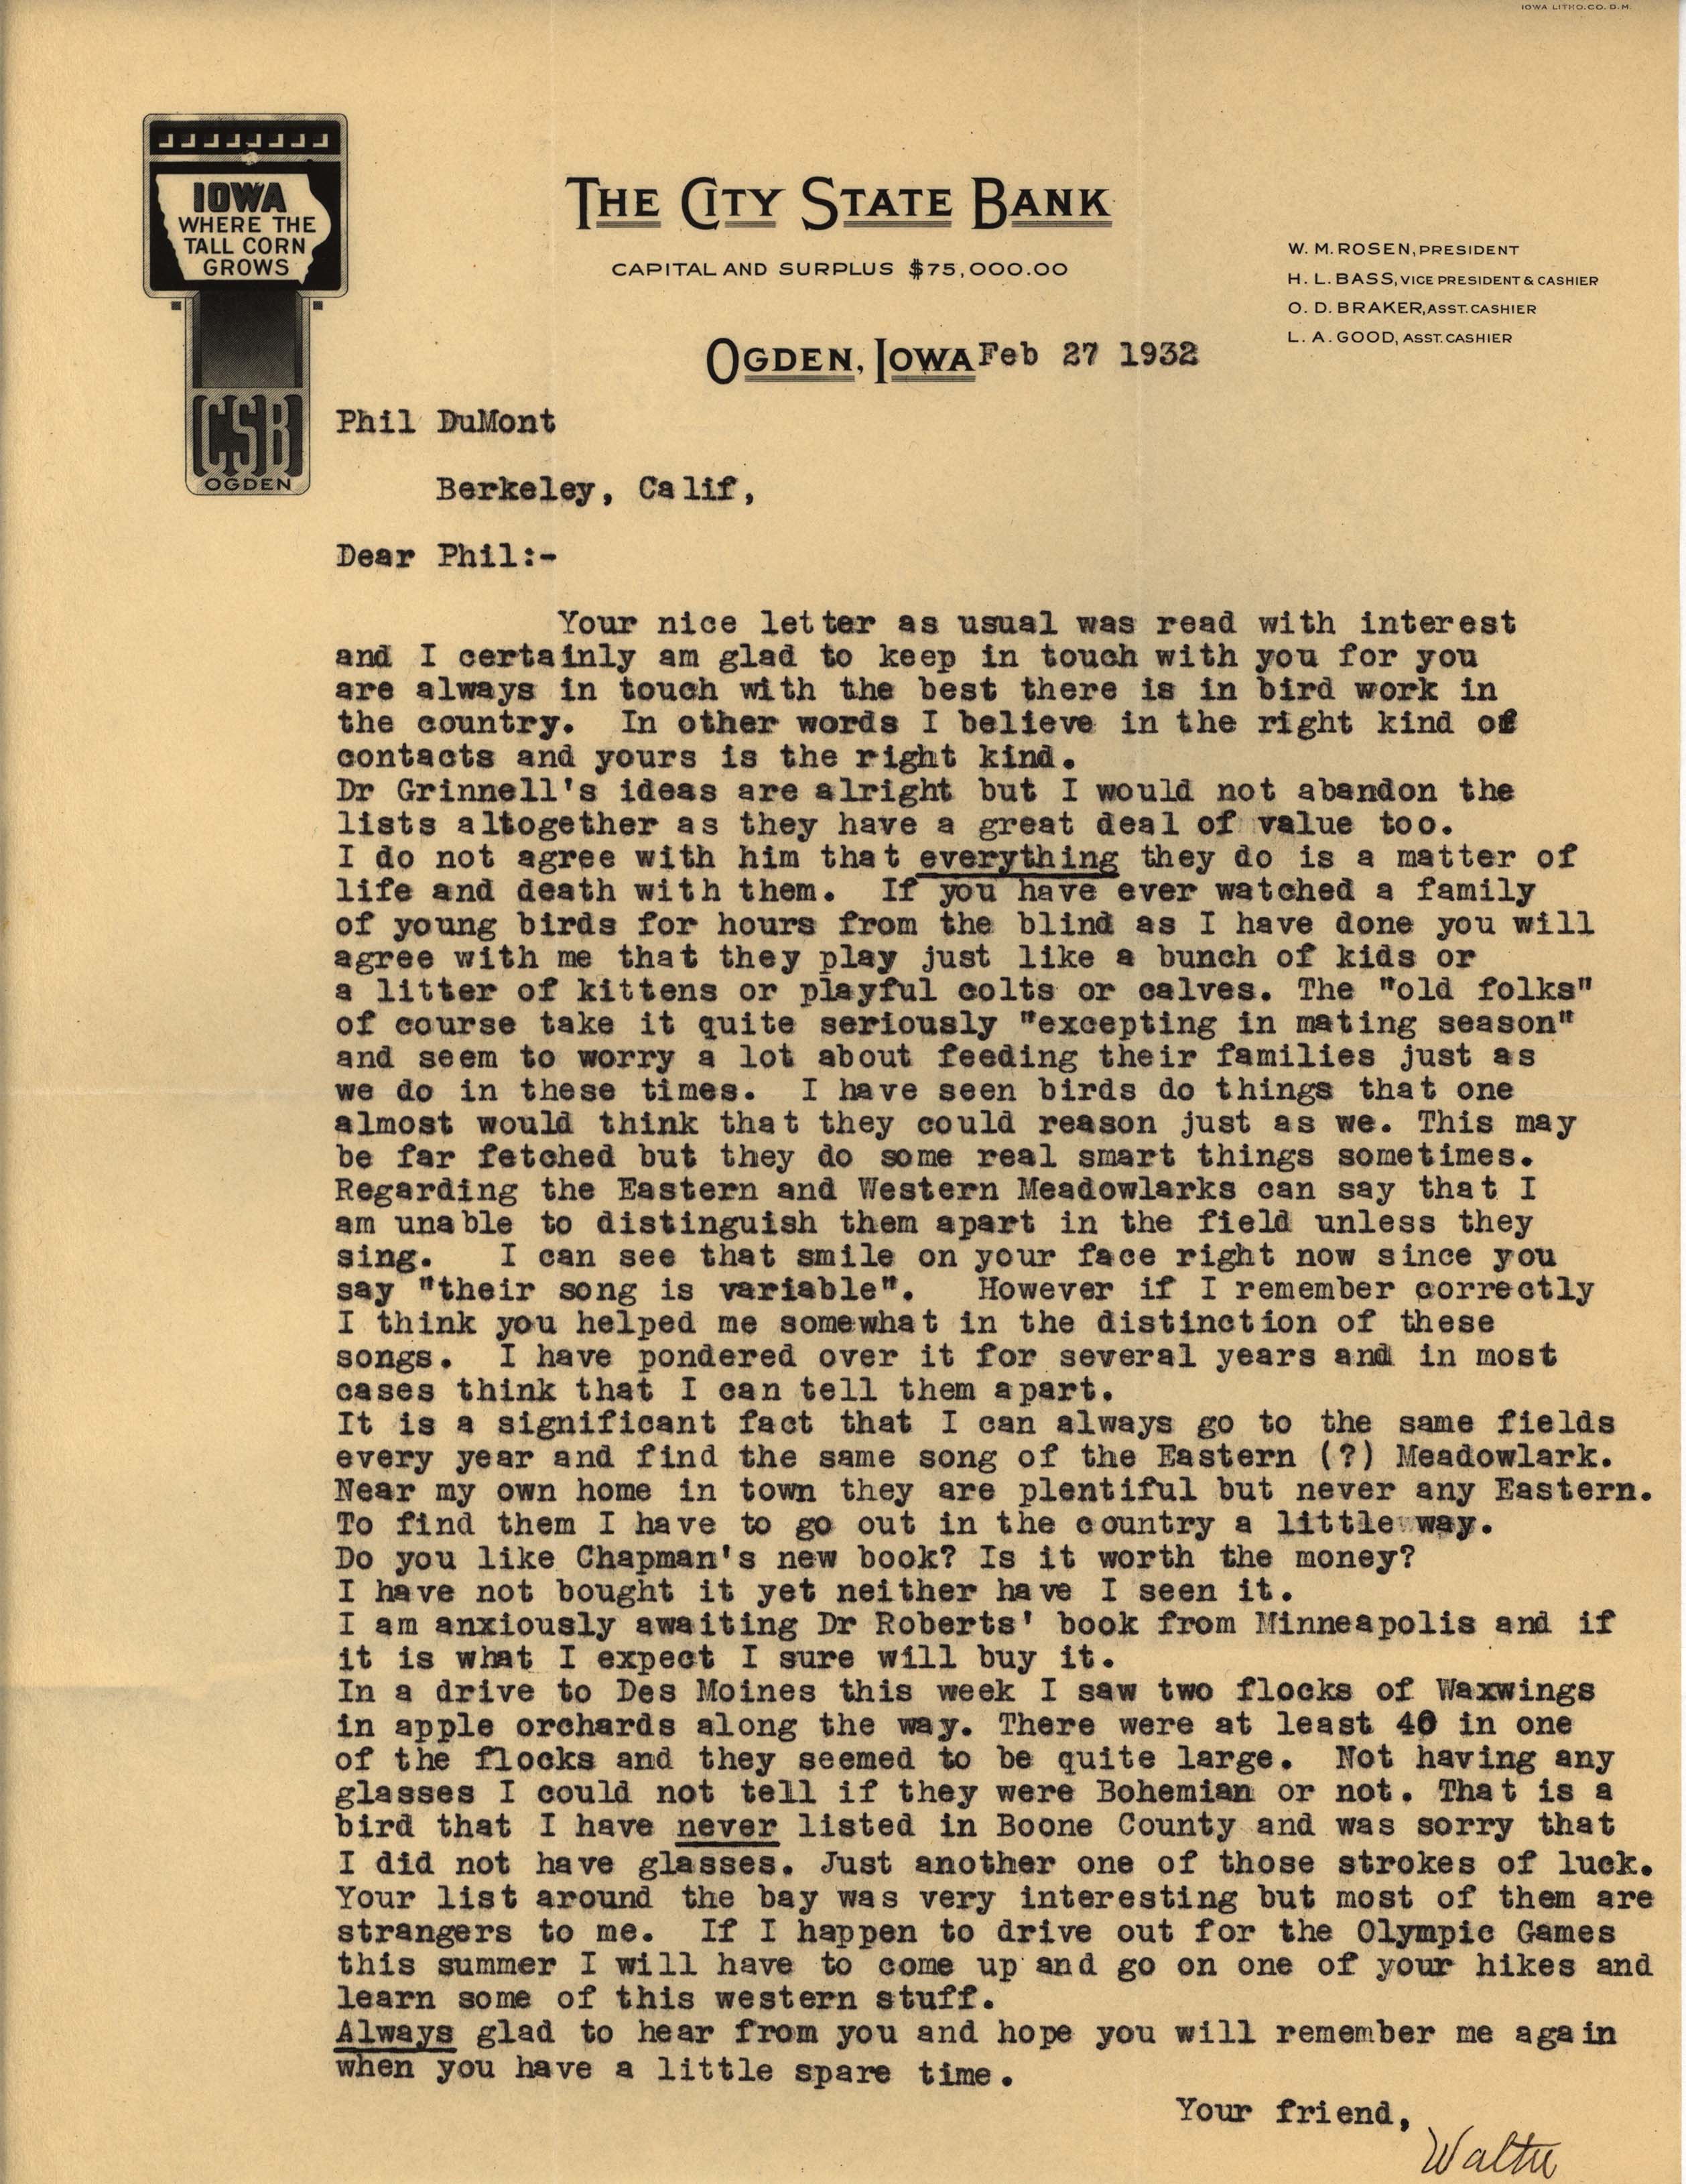 Walter Rosene letter to Philip DuMont regarding bird behavior, February 27, 1932